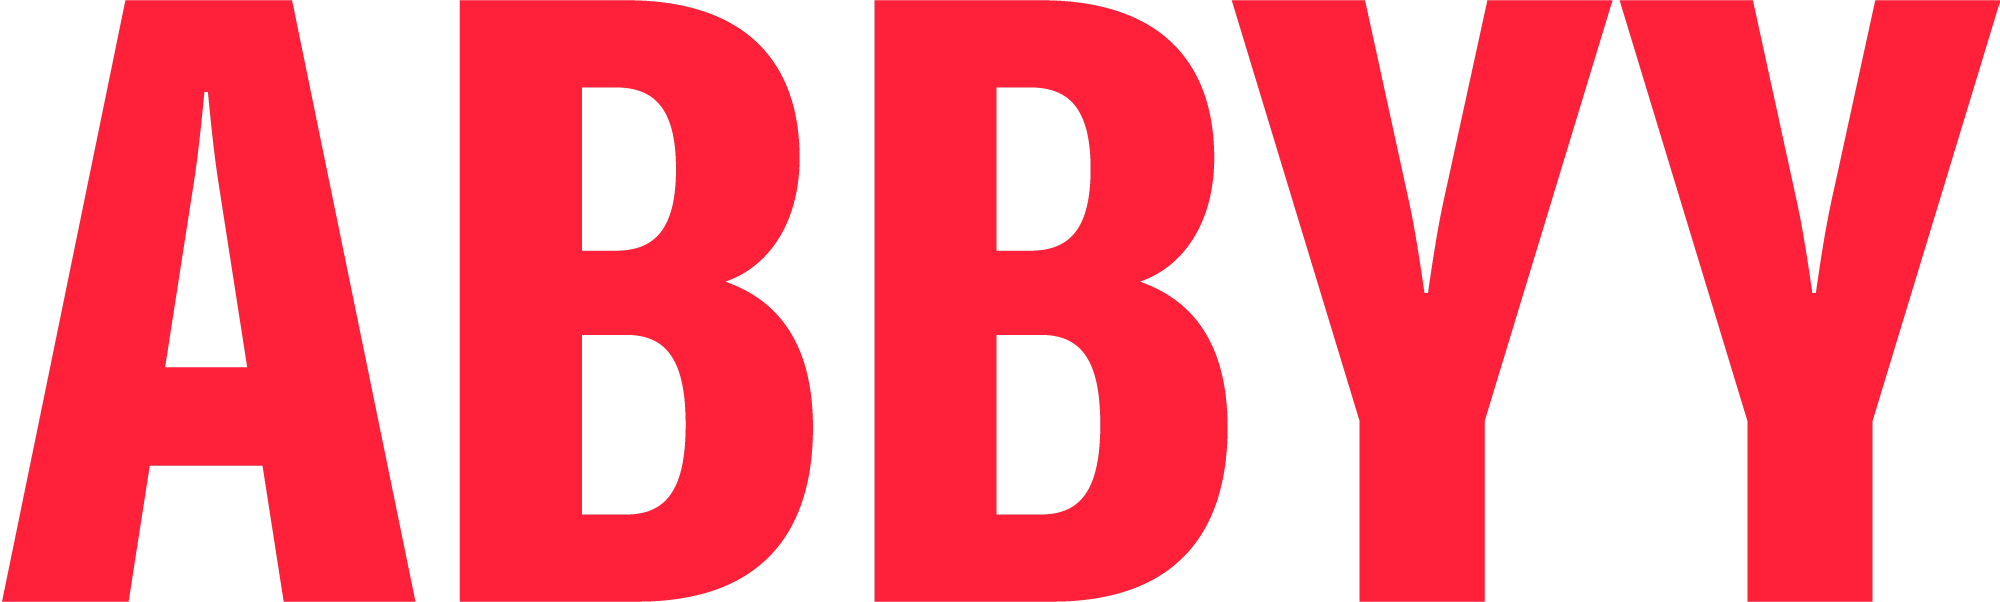 RGB_logo_ABBYY